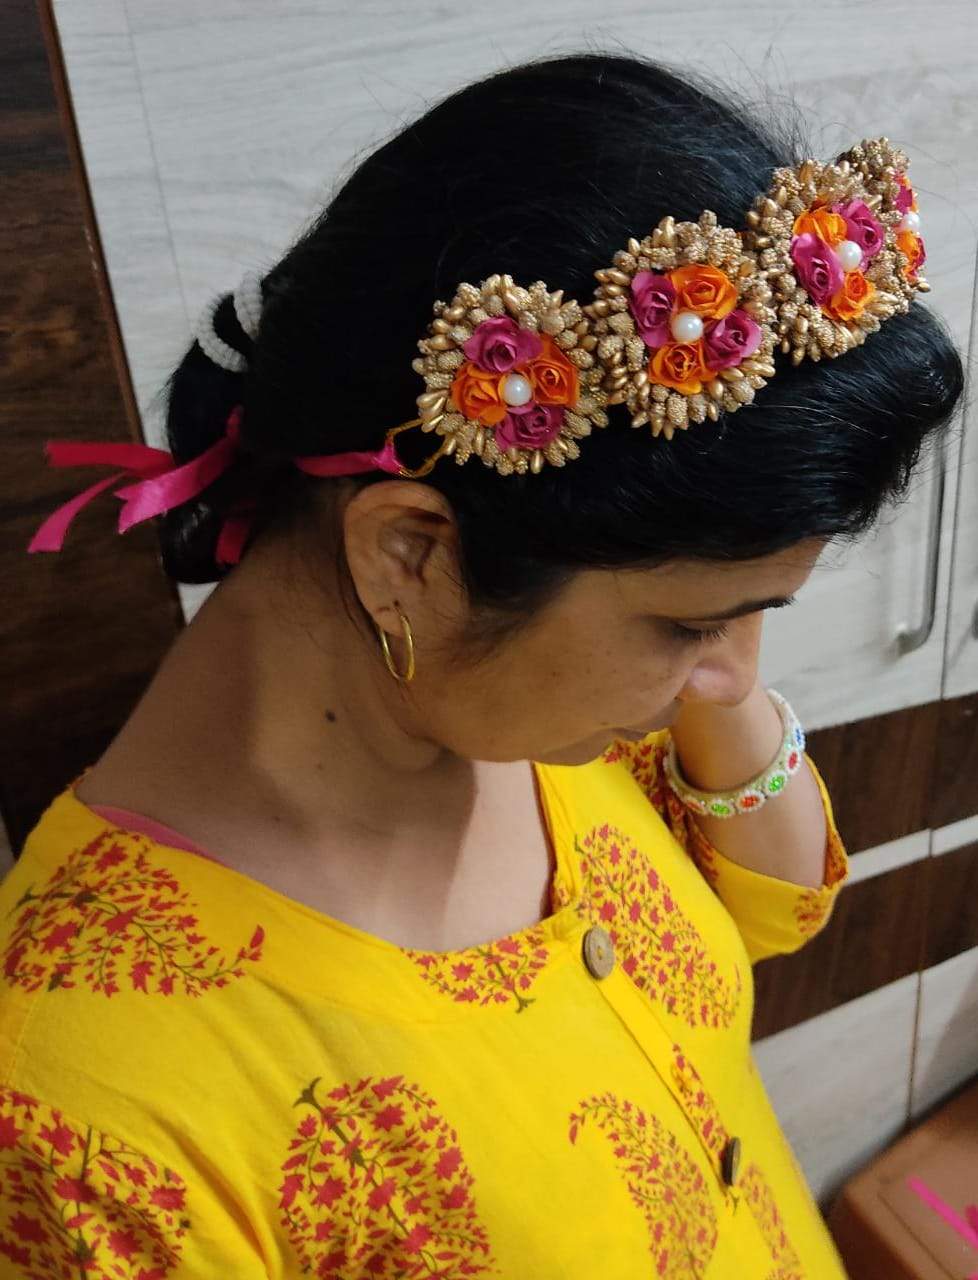 new jaipur handicraft flower tiara orange pink golden engagement birthday lamansh flower floral tiara for bride beach destination wedding haldi mehndi baby shower valentine anniversar 2229b96b bad2 4206 b475